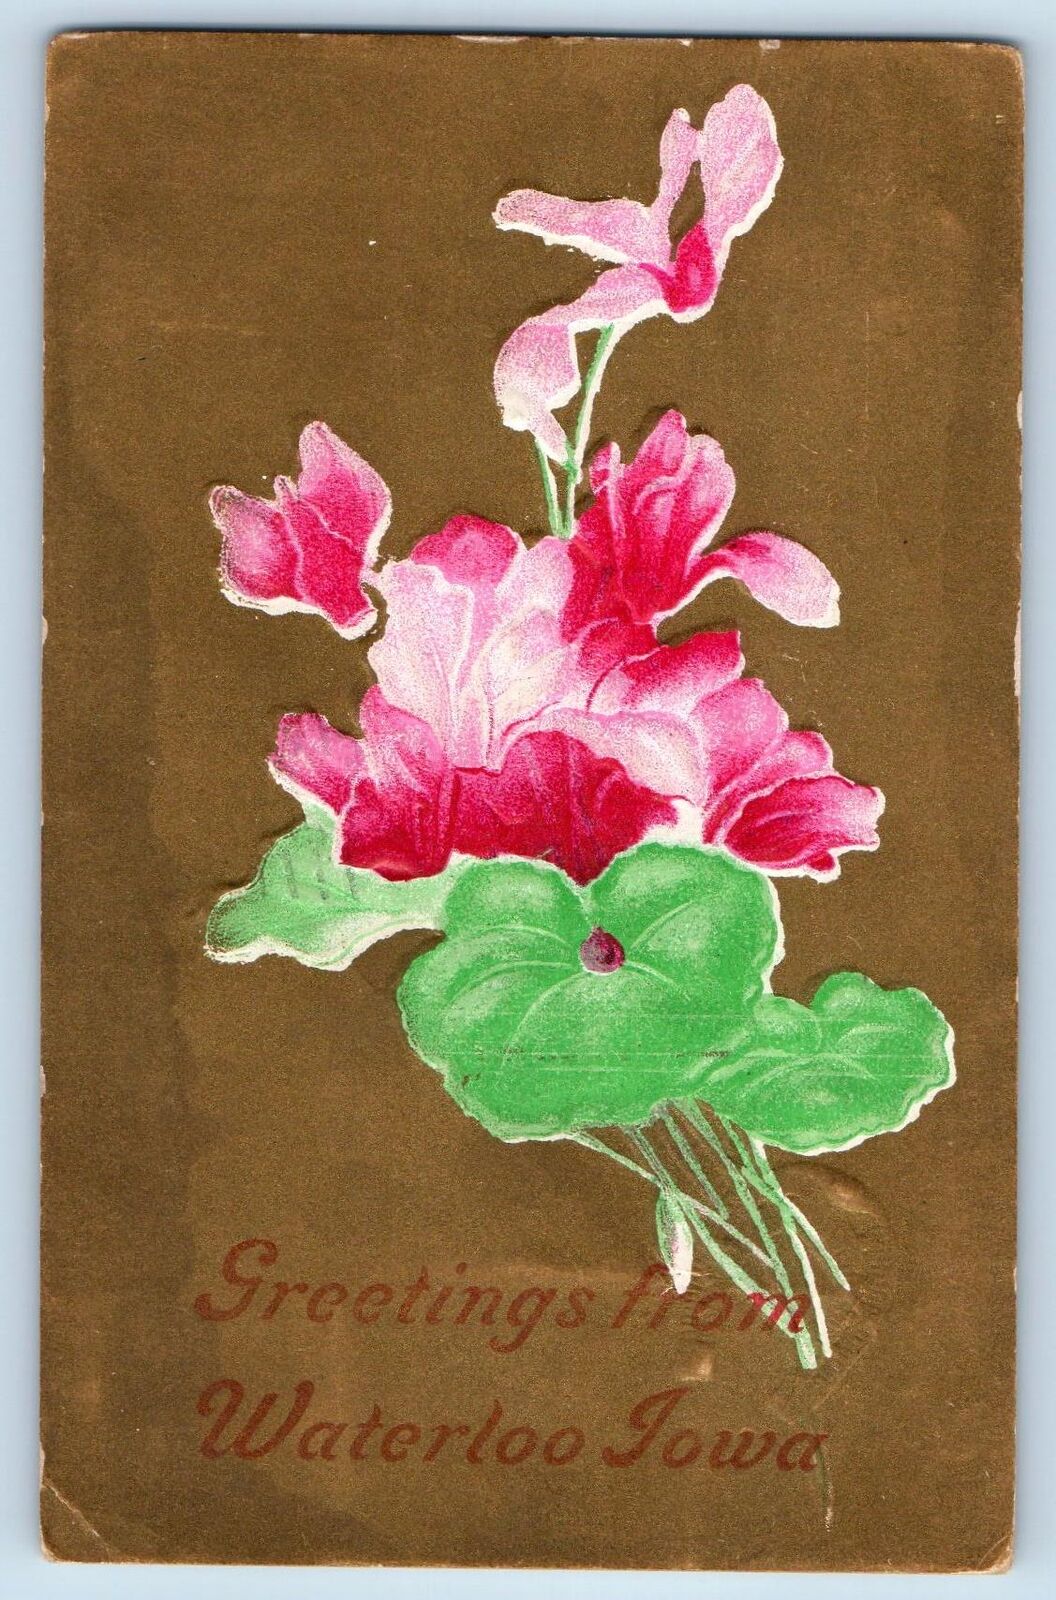 Waterloo Iowa IA Postcard Greetings Embossed Flowers And Leaves 1911 Antique